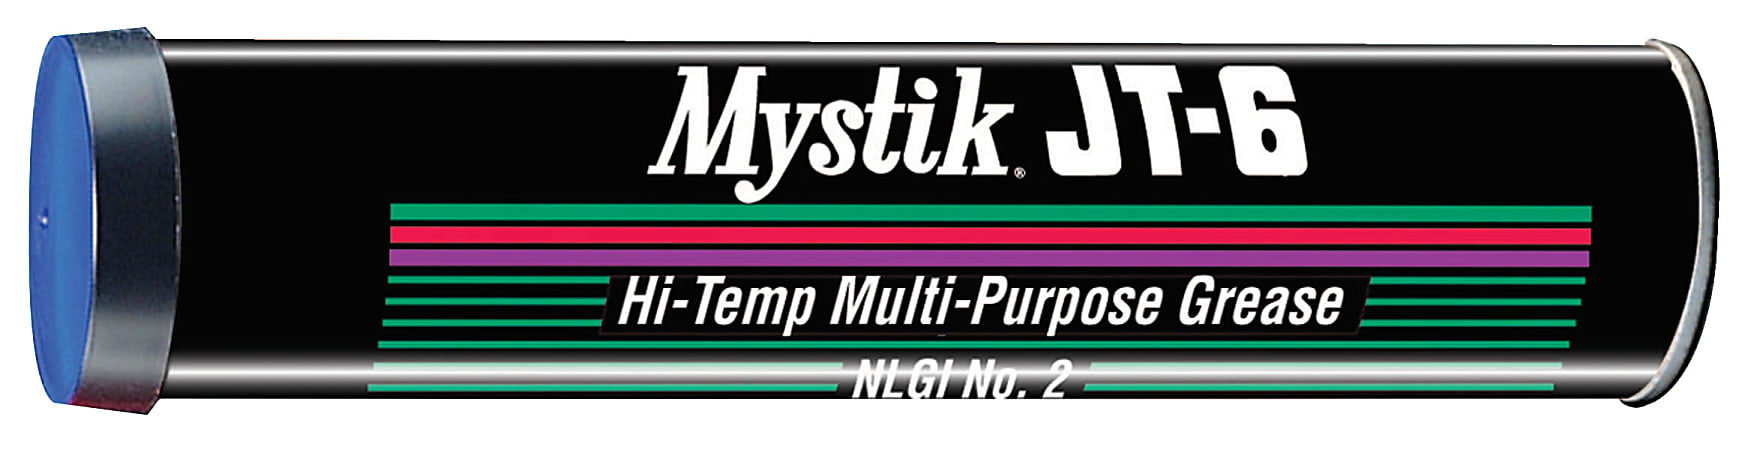 Mystik JT-6® Multipurpose Hi-Temp Grease, 14 Oz, Pack